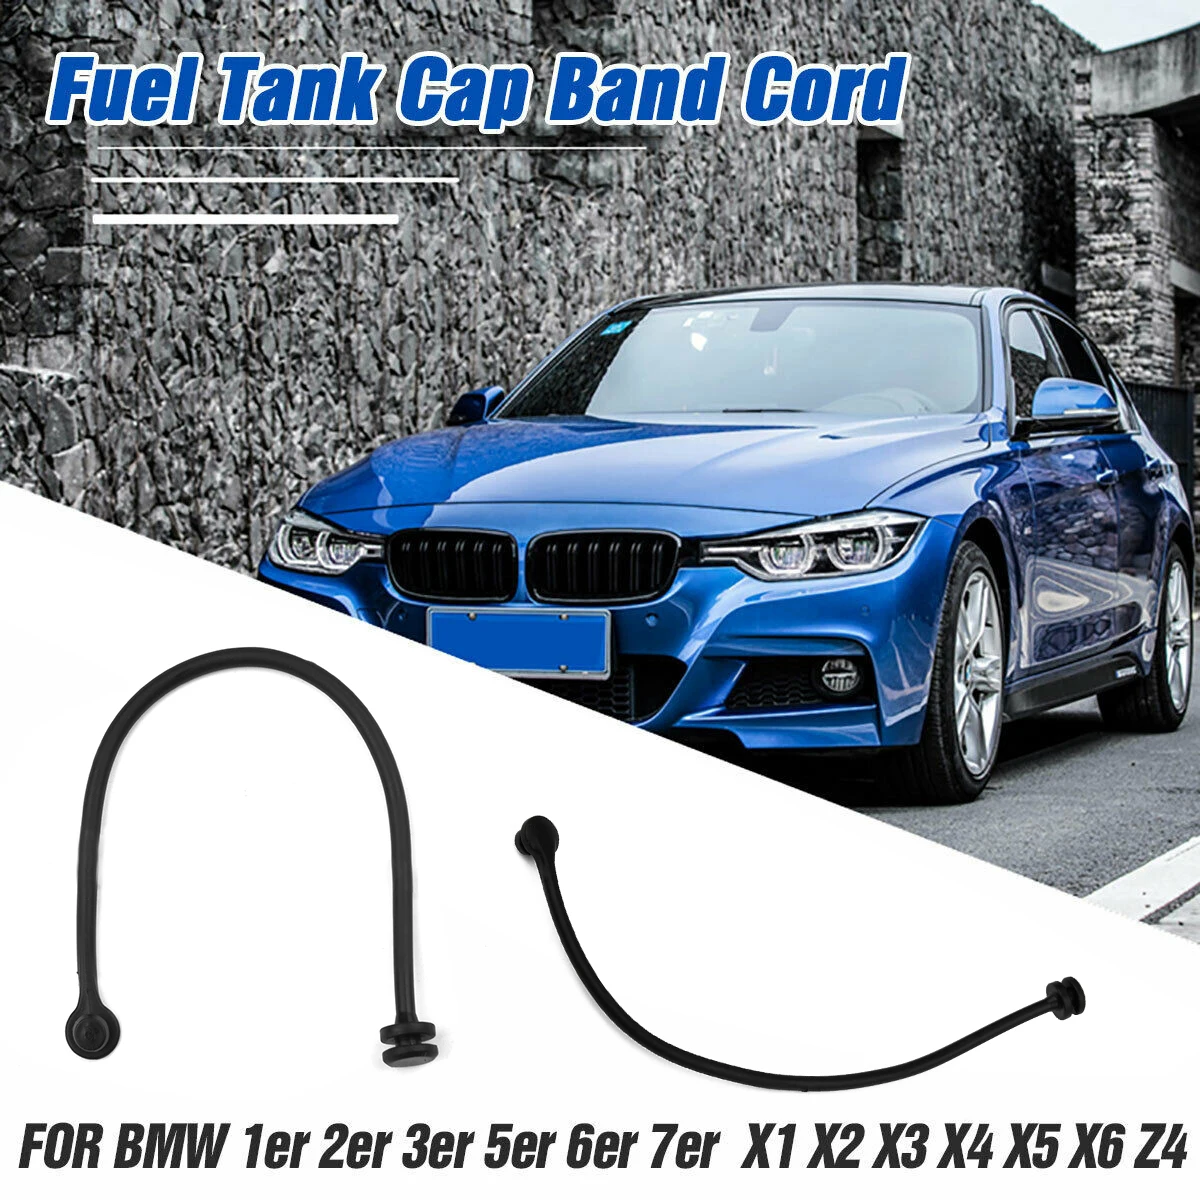 

1pc Fuel Tank Cap Band Cord Fuel Tank Cap Cable Wire For BMW E70 E81 E87 E88 E46 E89 E65 E66 E68 F01 F02 F04 Car Accessories